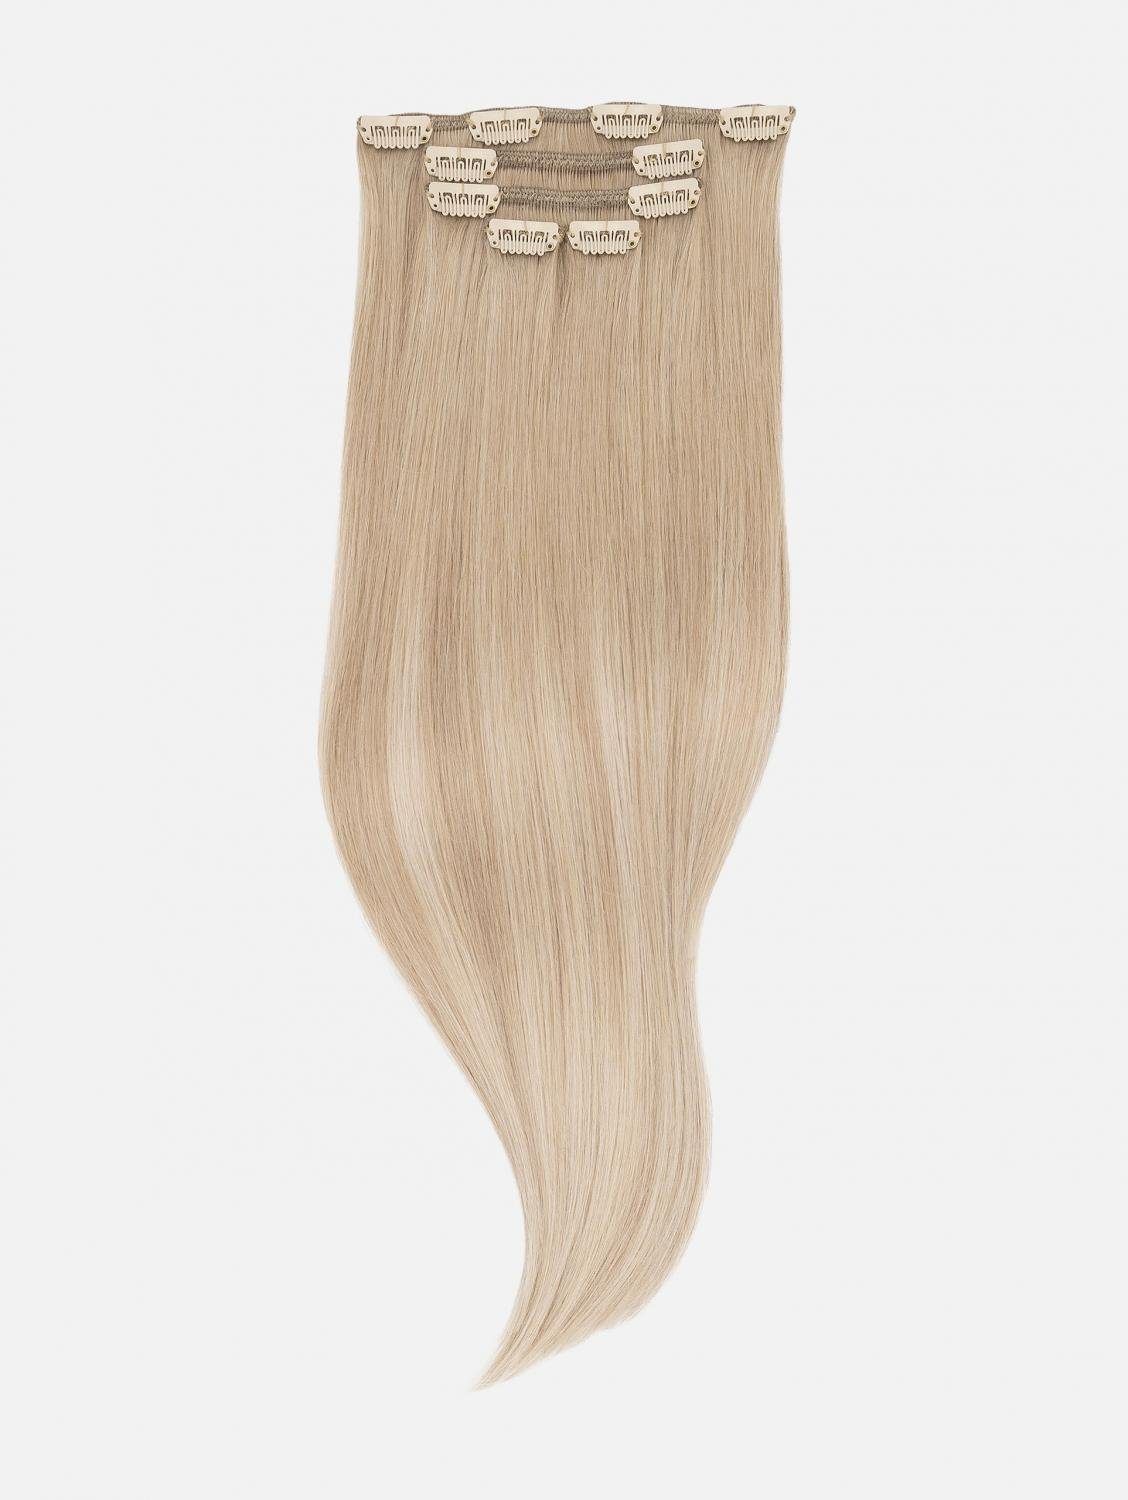 NATURAL Balayage Blonde Echthaar Echthaar (Honey - Extensions - Balayage) Echthaar-Extension 5-teilig EH #B18/24A Haarverlängerung Clip-In 50cm,